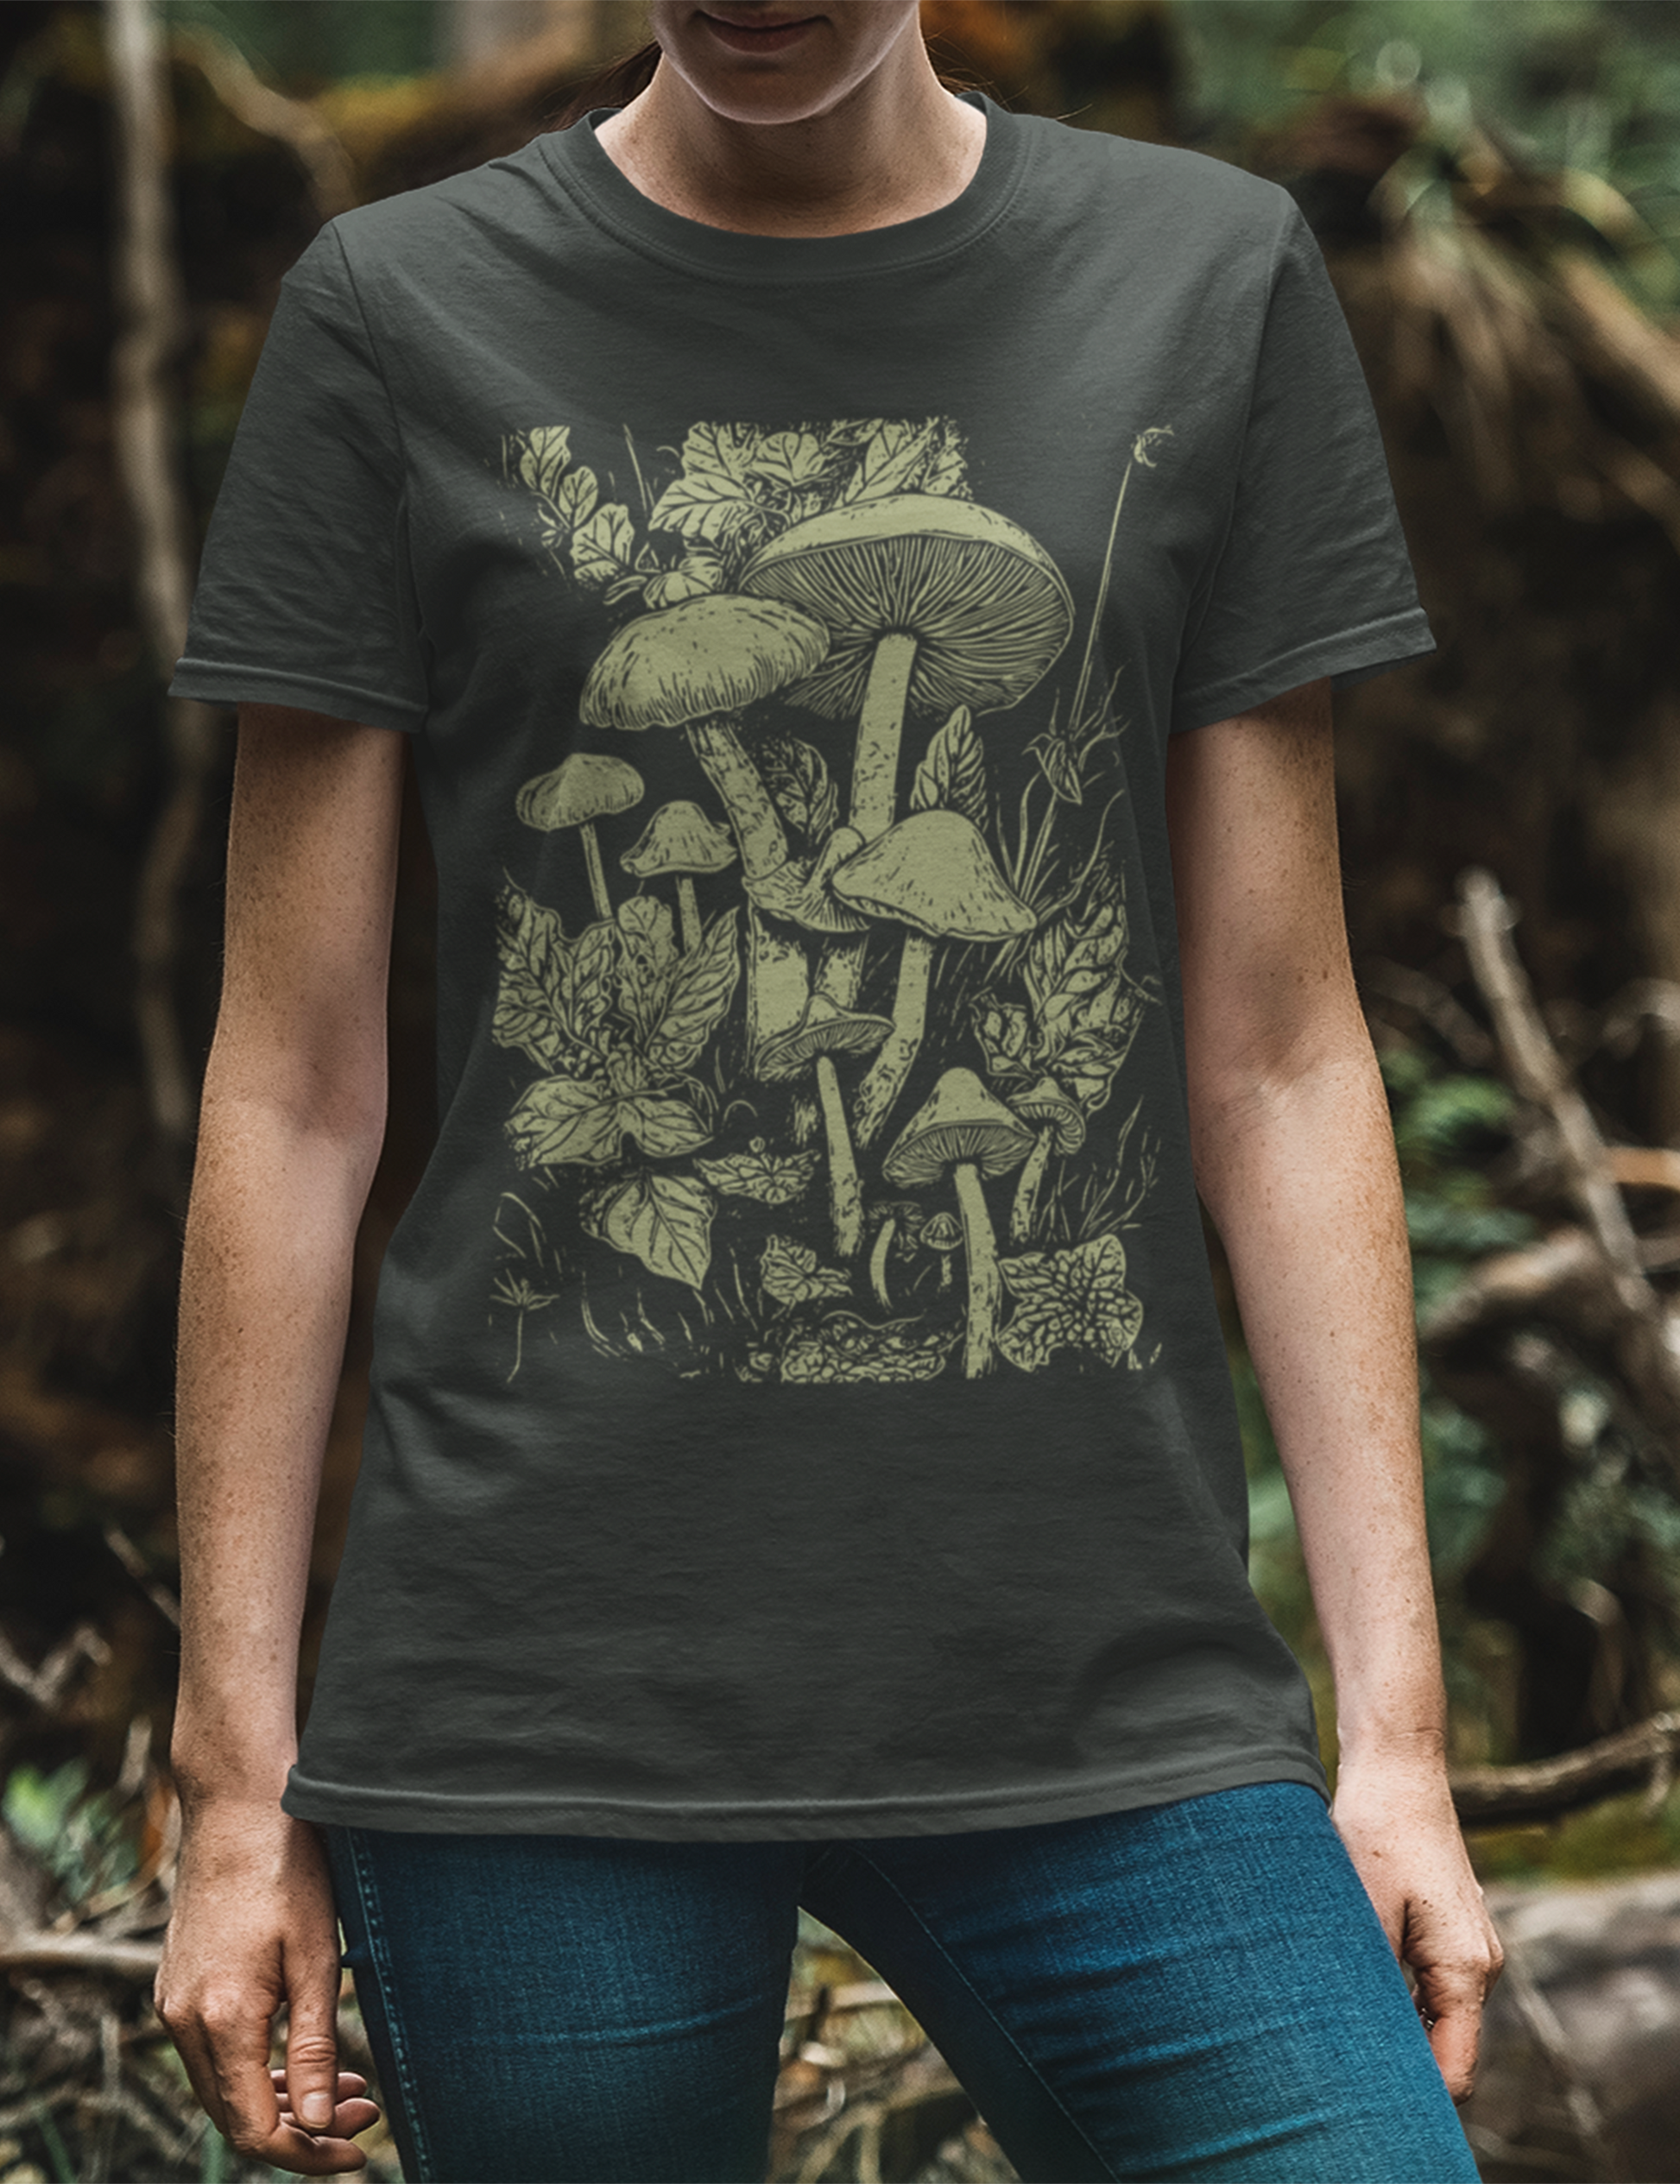 Plus Size Fairy Grunge Dark Cottagecore Mushroom Aesthetic Clothing Shirt